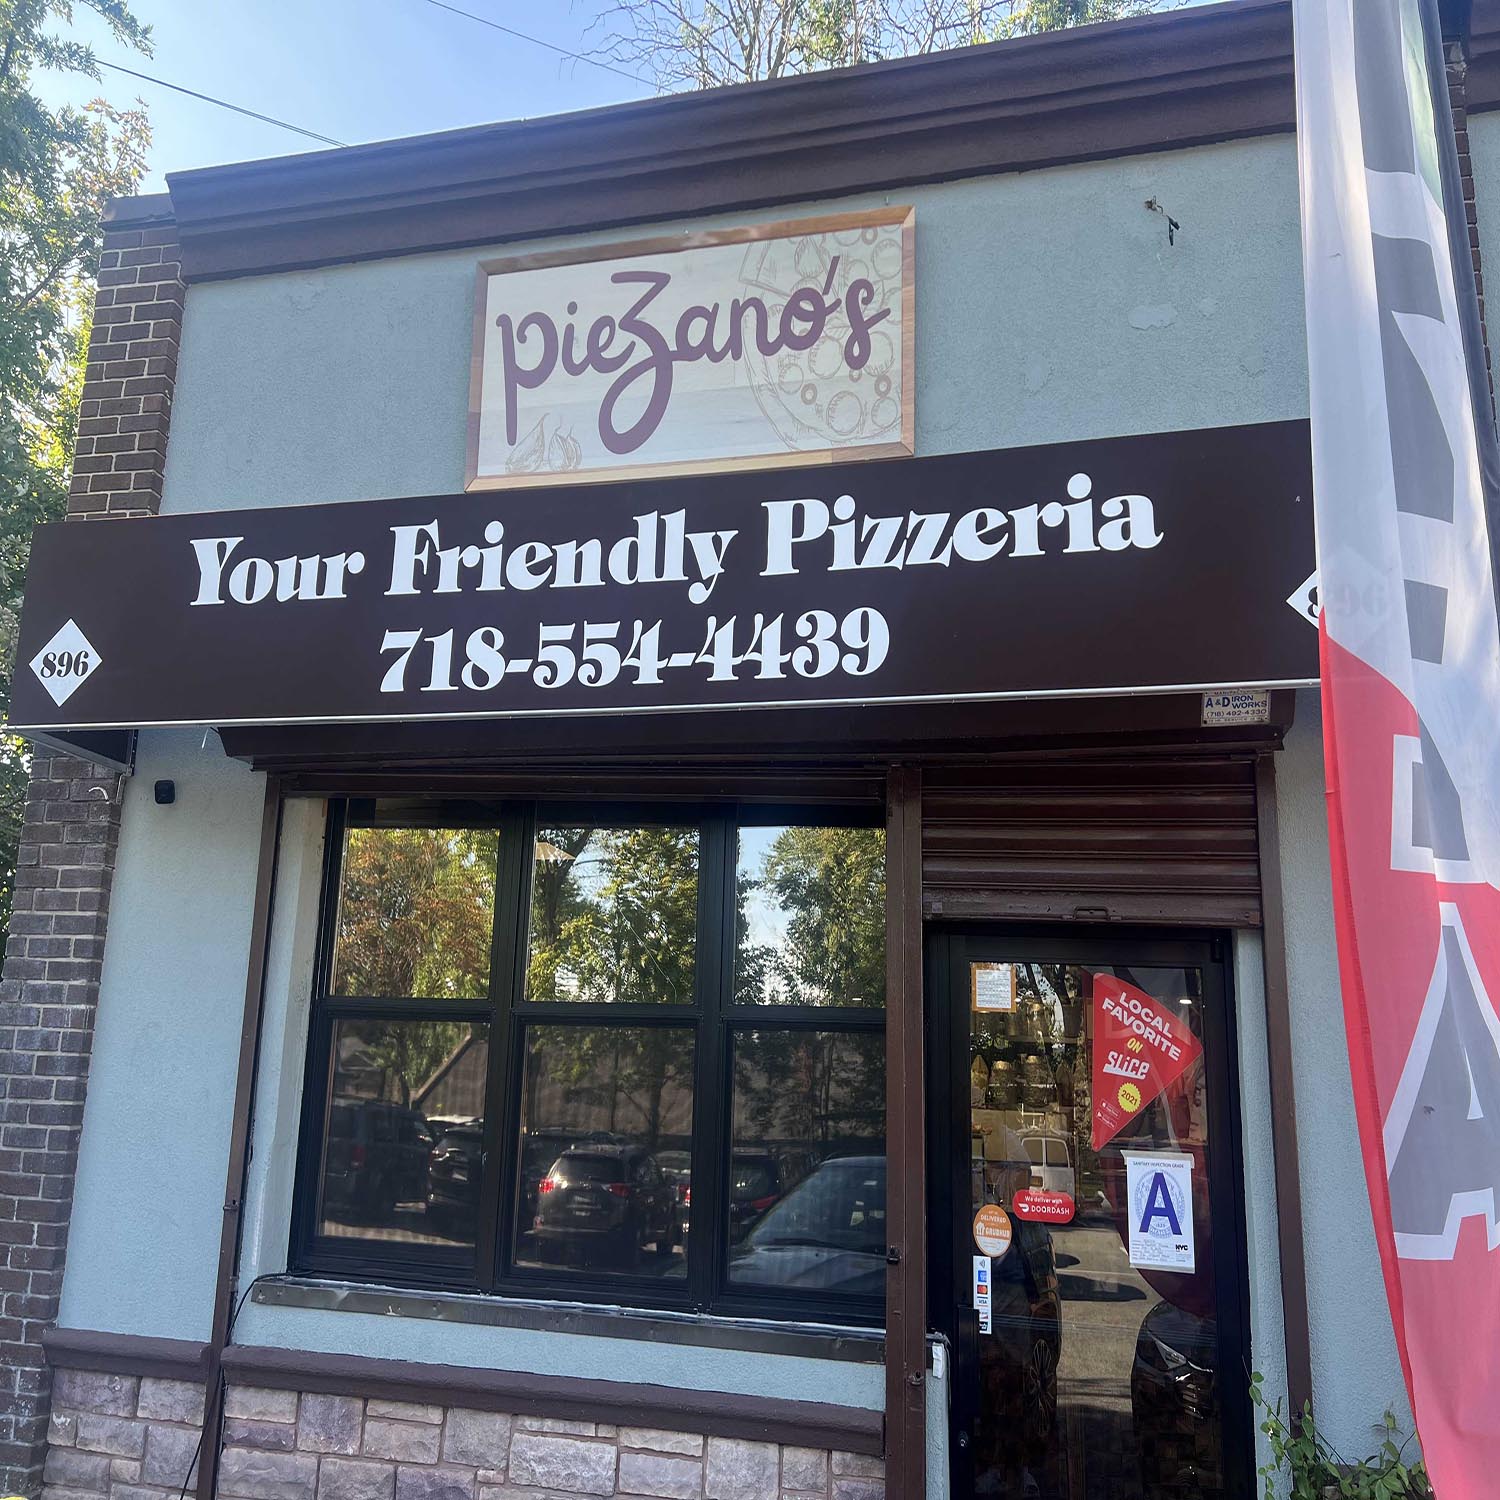 Piezanos Best Pizza, Staten Island